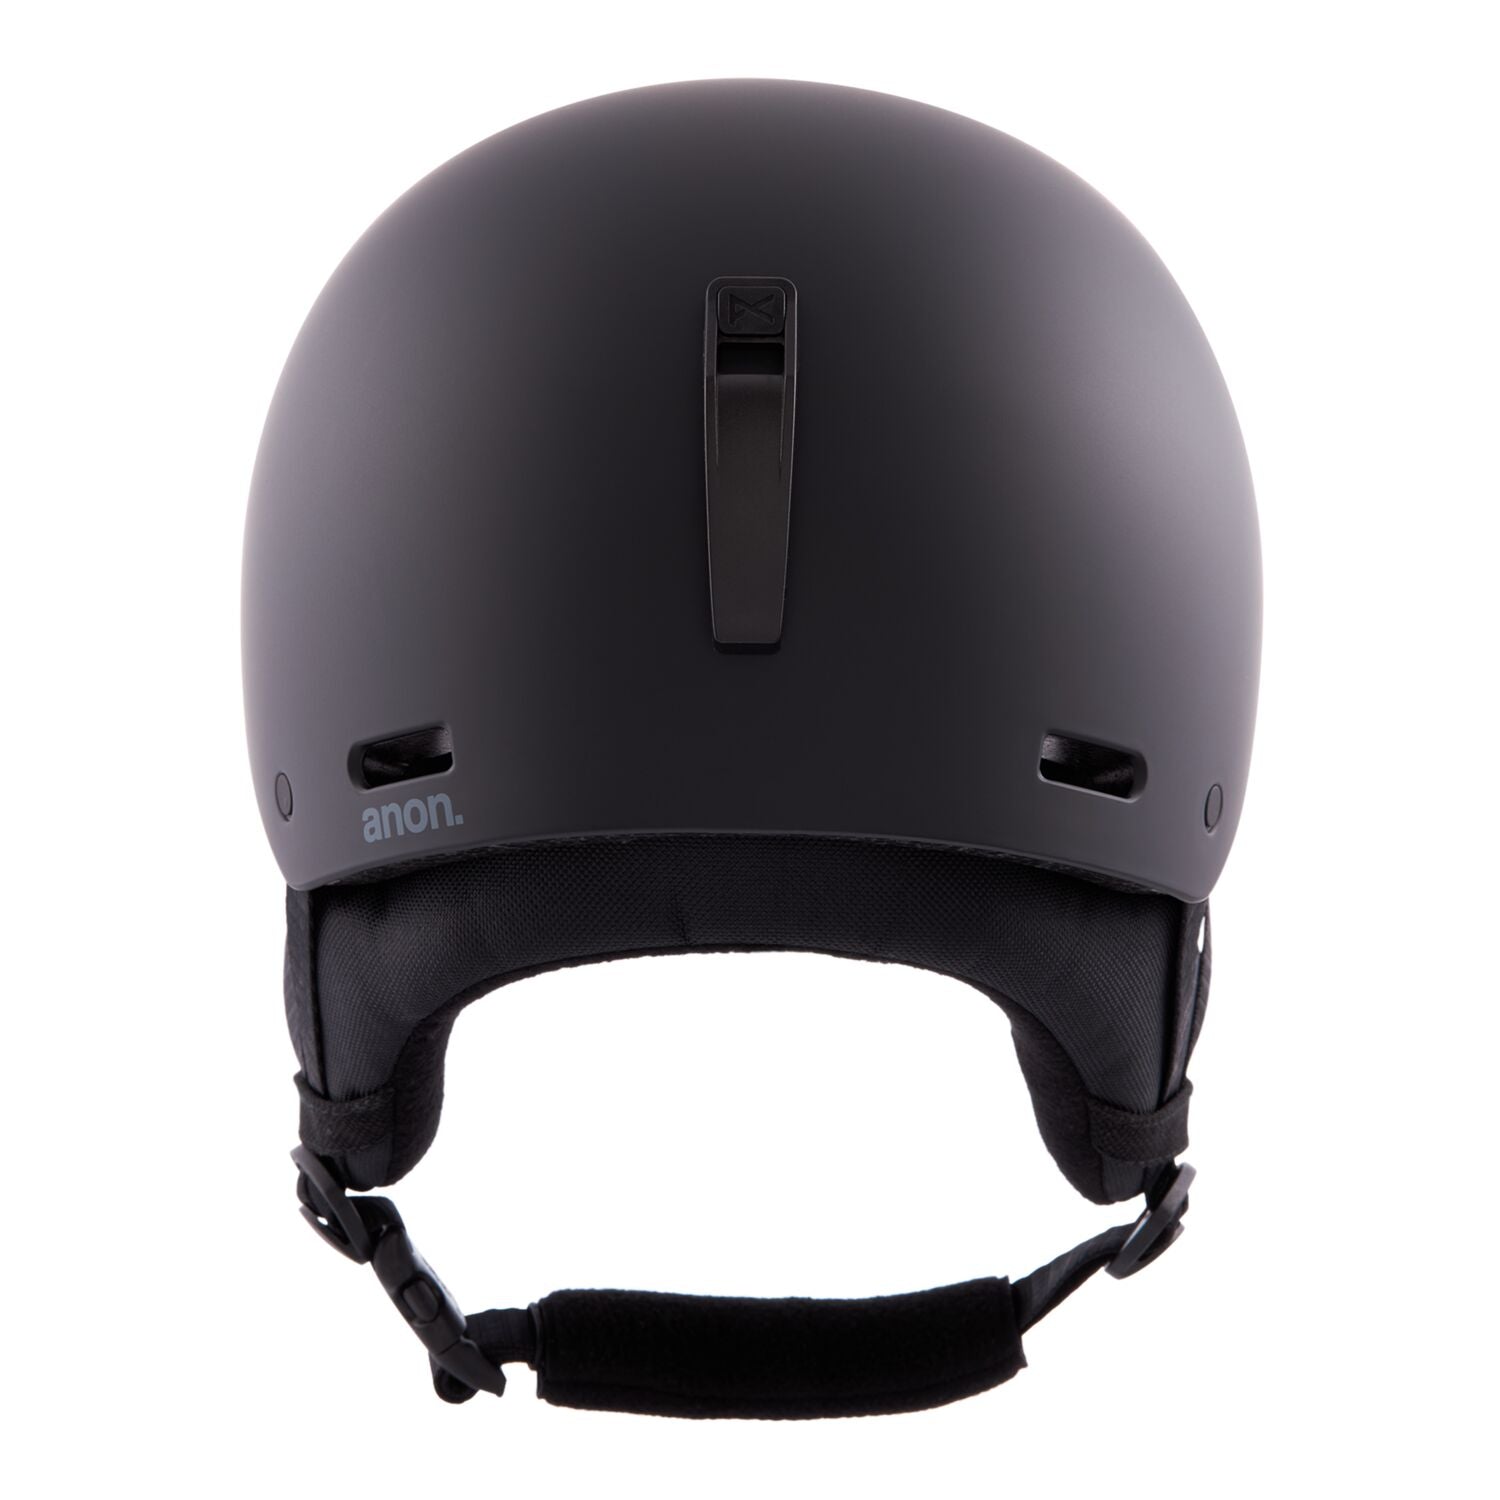 Raider 3 Helmet, Black